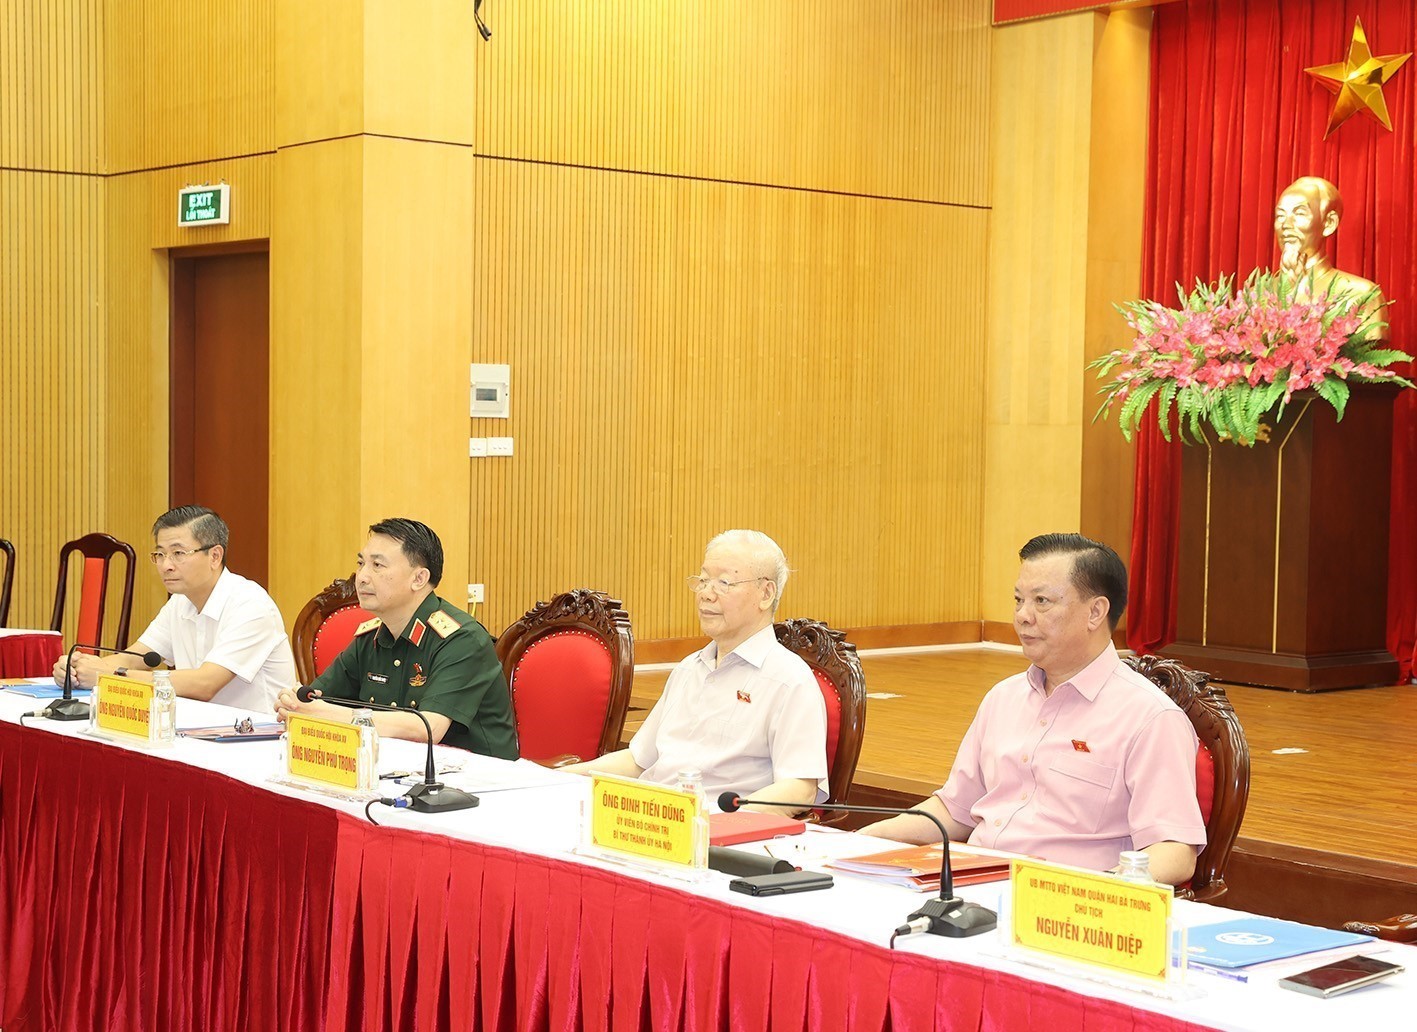 Tổng Bí thư Nguyễn Phú Trọng và các đại biểu Quốc hội Đoàn Thành phố Hà Nội tiếp xúc cử tri tại đơn vị bầu cử số 1, quận Hai Bà Trưng. Ảnh: TTXVN